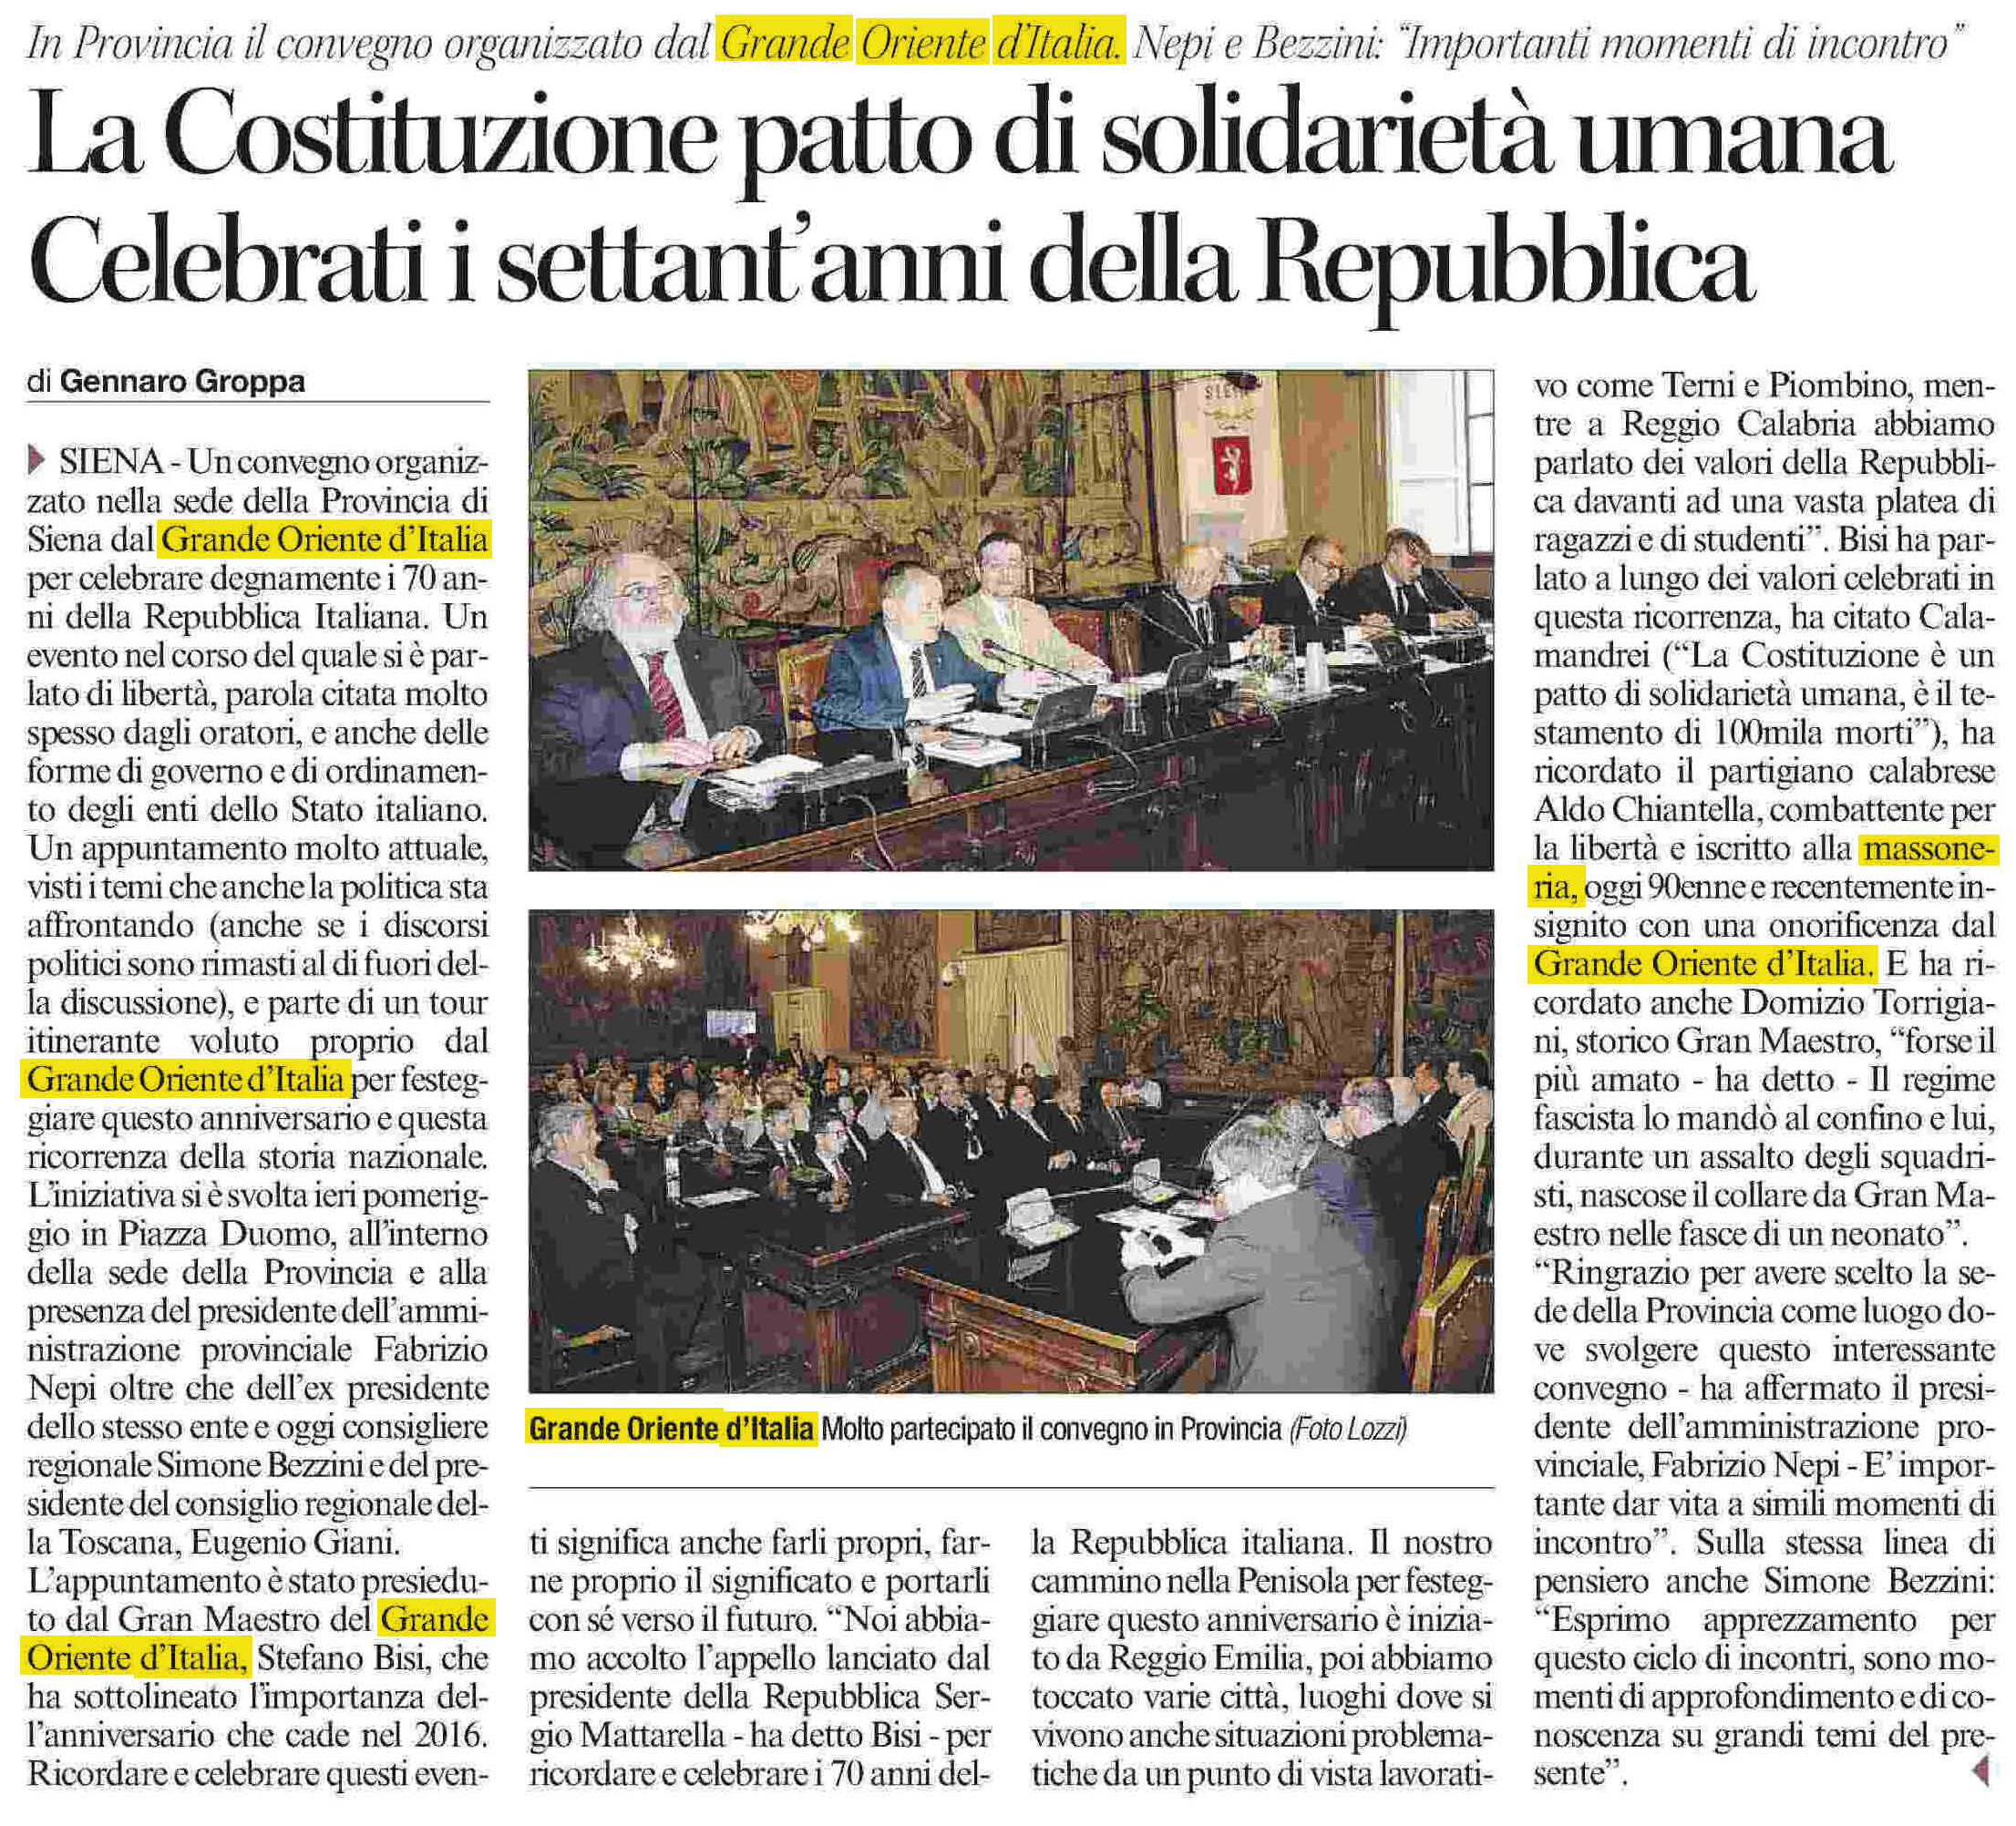 L'articolo pubblicato dal Corriere di siena il 27 maggio 2016